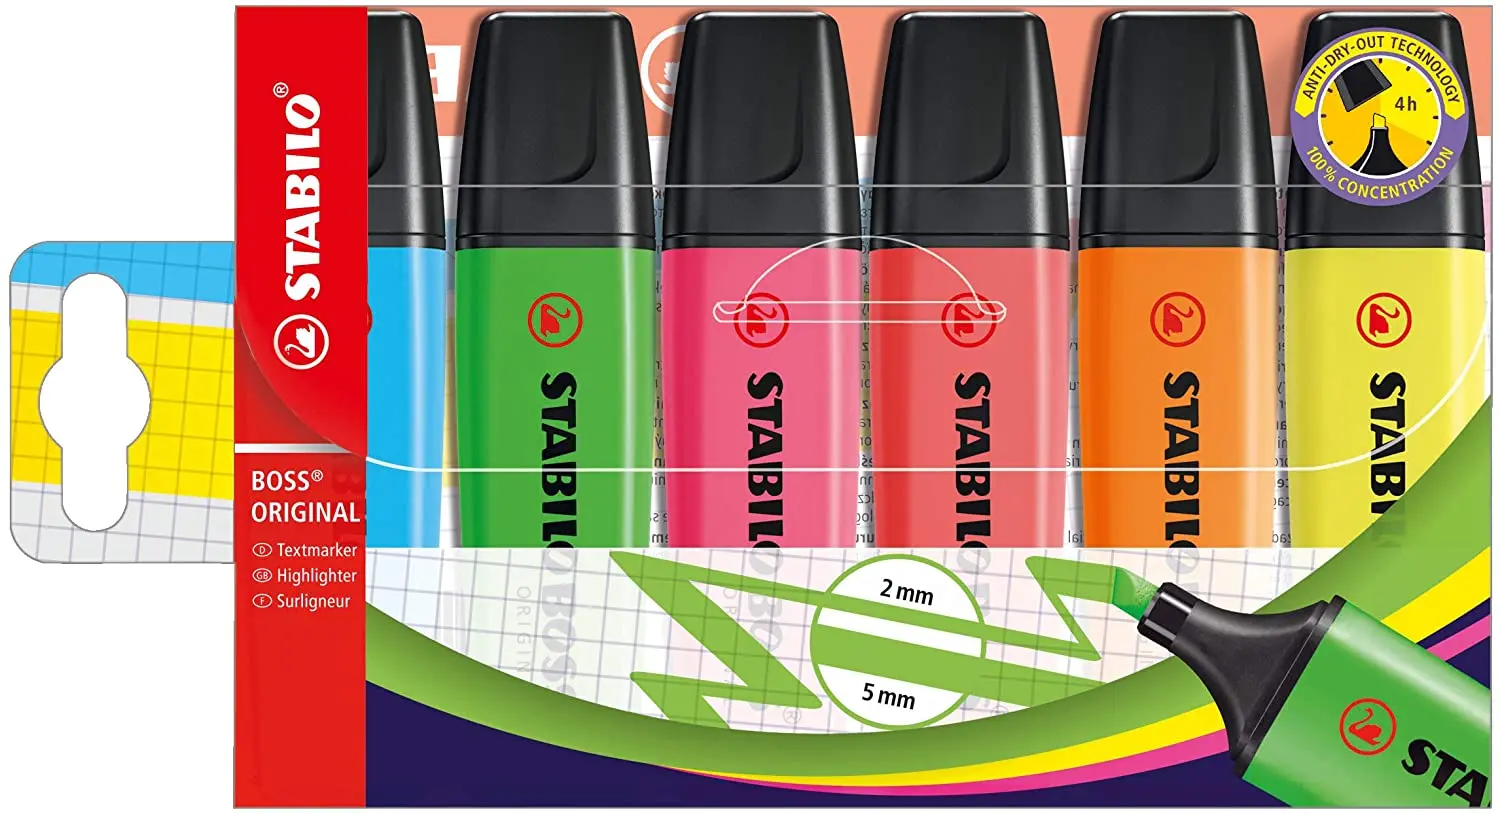 Stabilo Boss 70 Pack de 6 Marcadores Fluorescentes - Trazo entre 2 y 5mm - Recargable - Tinta con Ba